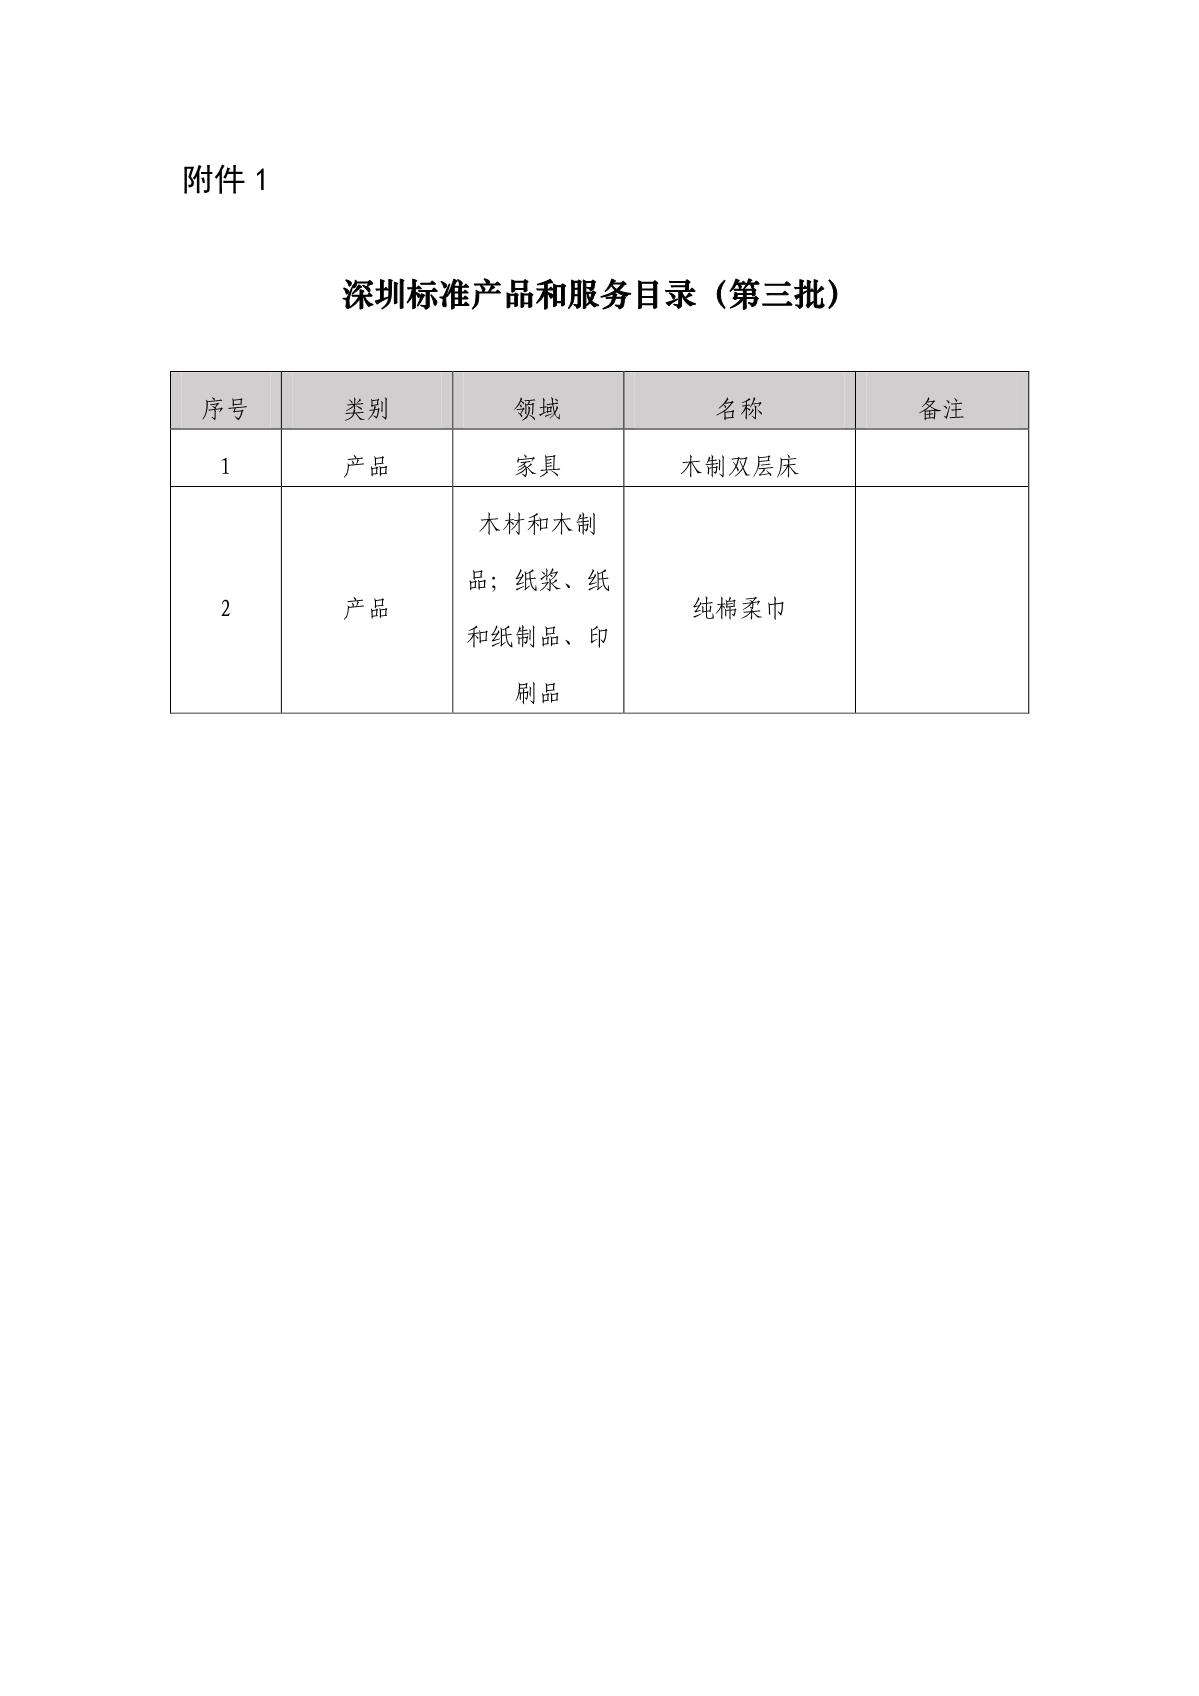 深圳标准产品和服务目录（第三批）